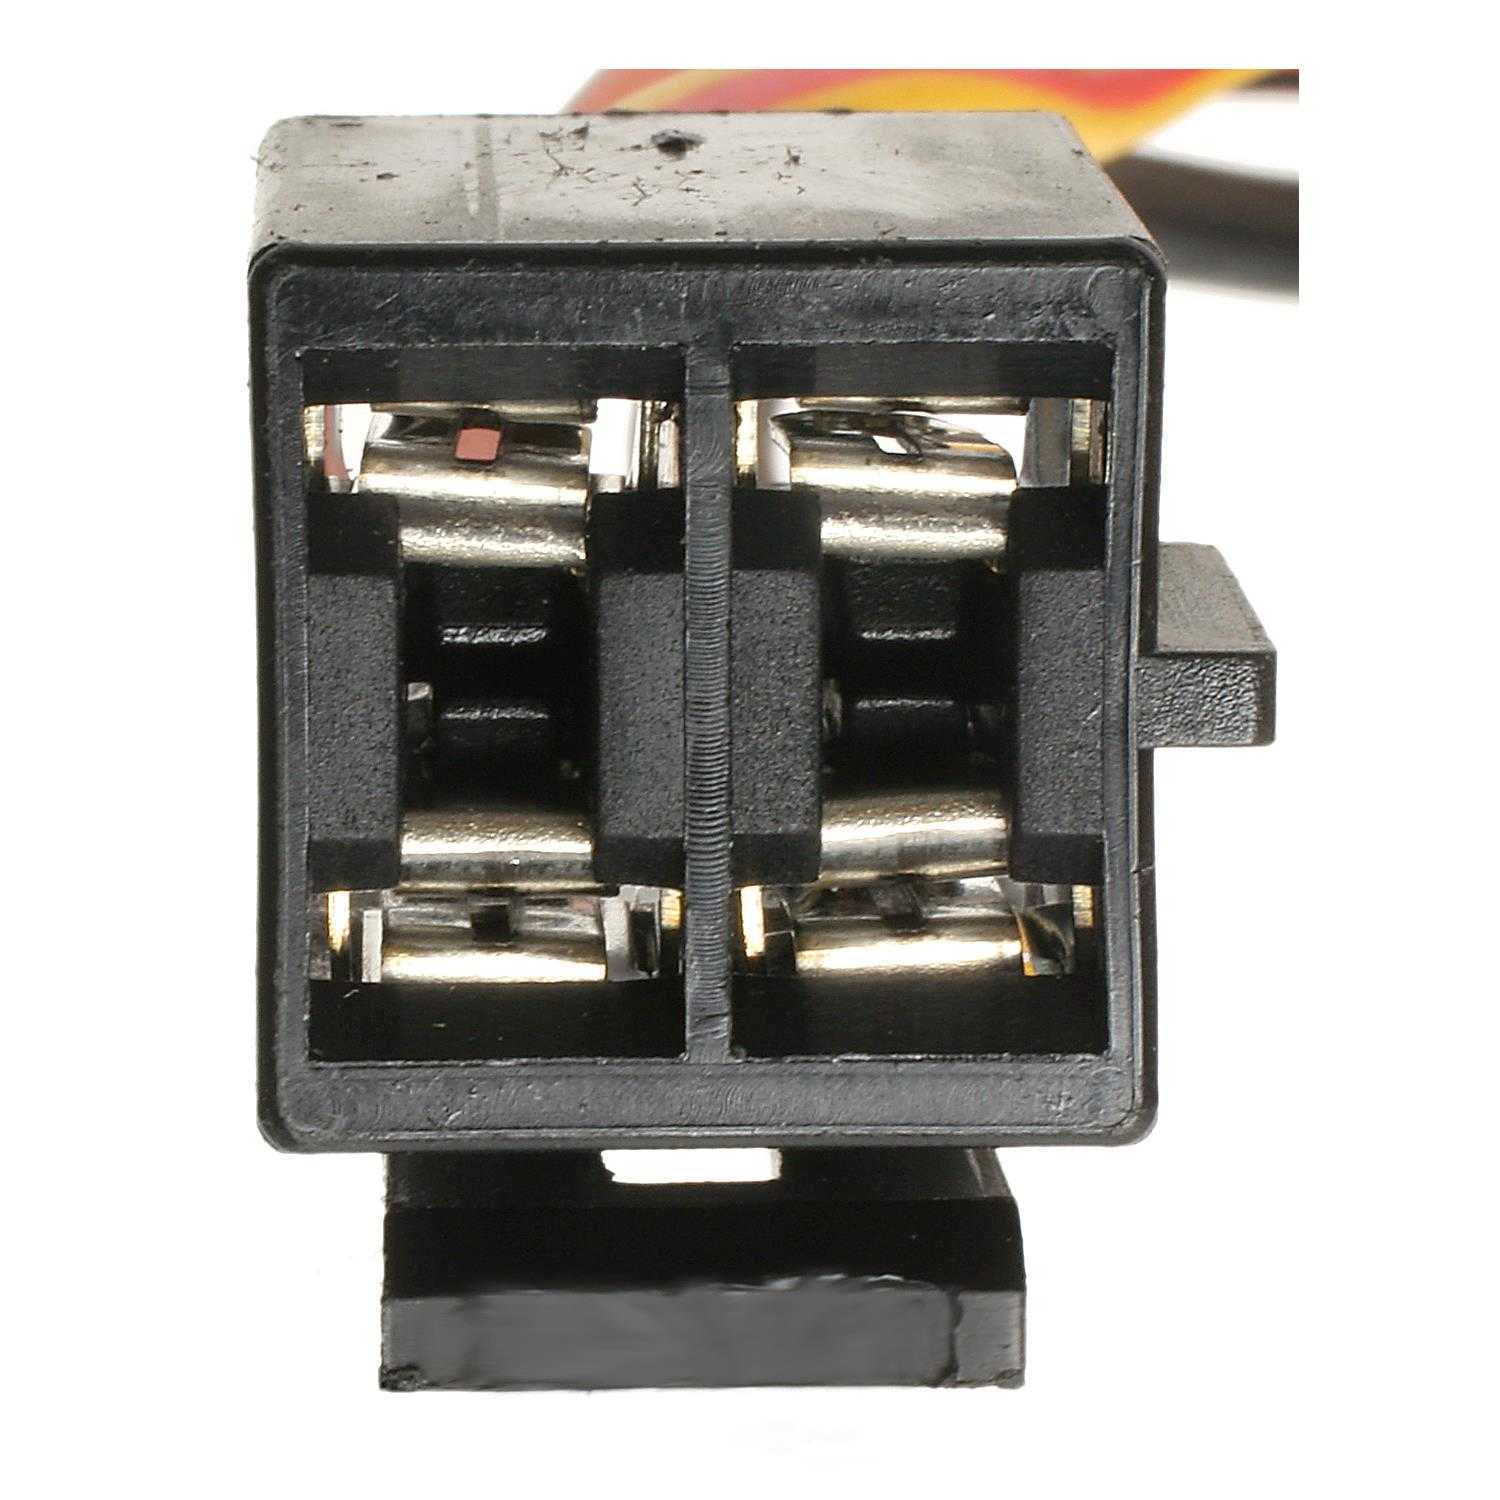 Connecteur de séparation à 2 pôles F650, F700, F750, HP2, Sport, F800,  F850, G650, C650, K1100, K1200, K1300, K1600, R850, R900